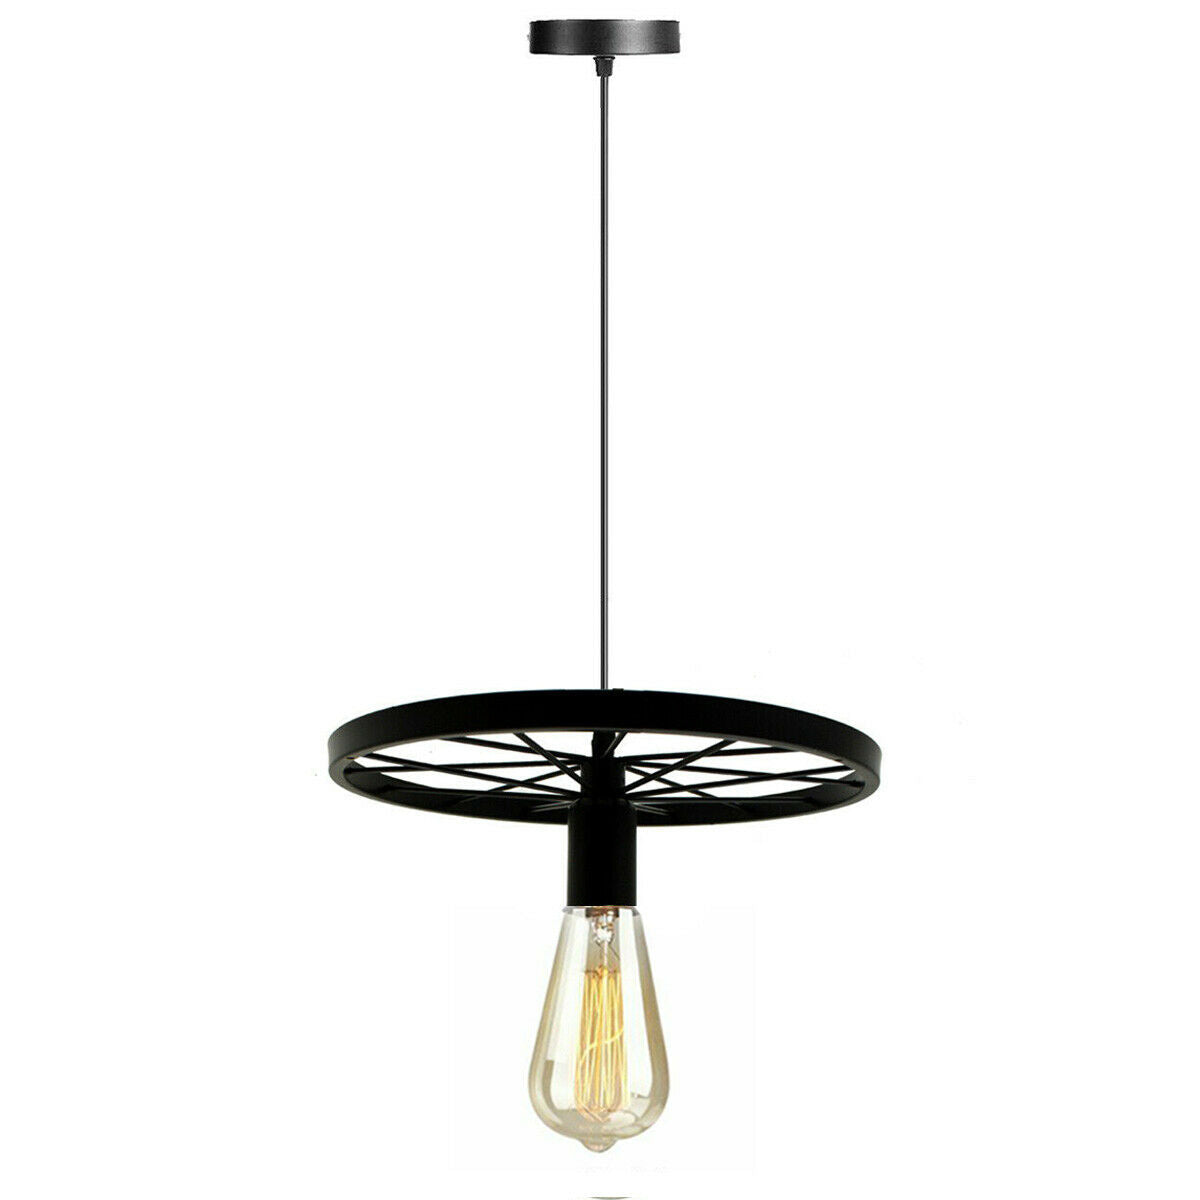 Modern Industrial Retro Pendant Lamp Ceiling Light Wheel Light for Bedroom cafe~2245 - LEDSone UK Ltd